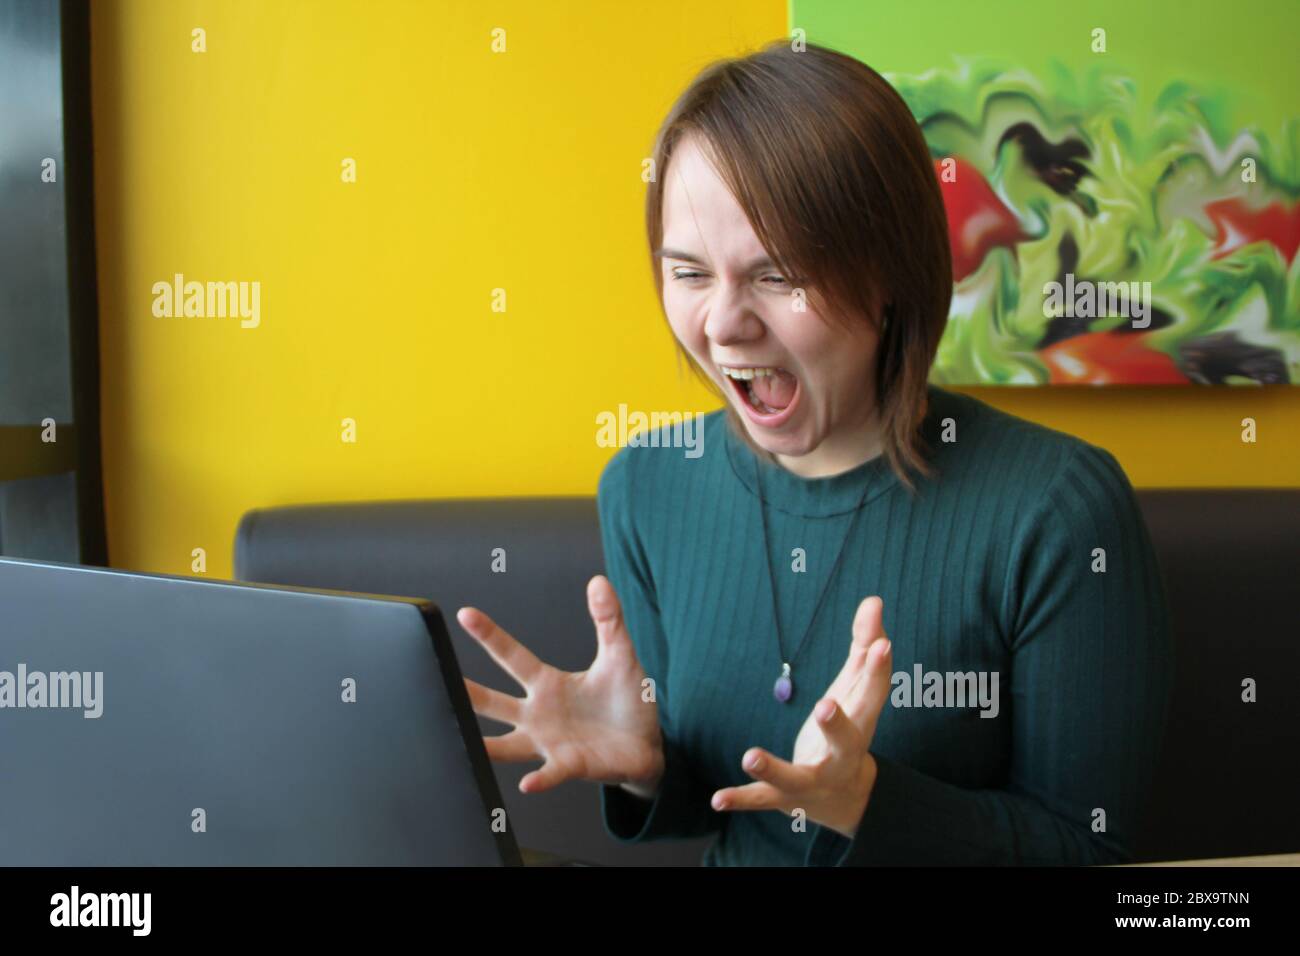 Una ragazza con un'espressione furiosa di tensione sul suo volto si siede lavorando a un computer portatile a un tavolo in un bar su un divano marrone contro una parete gialla. Guarda lo schermo del computer, urla e fa ondate le mani. Foto Stock